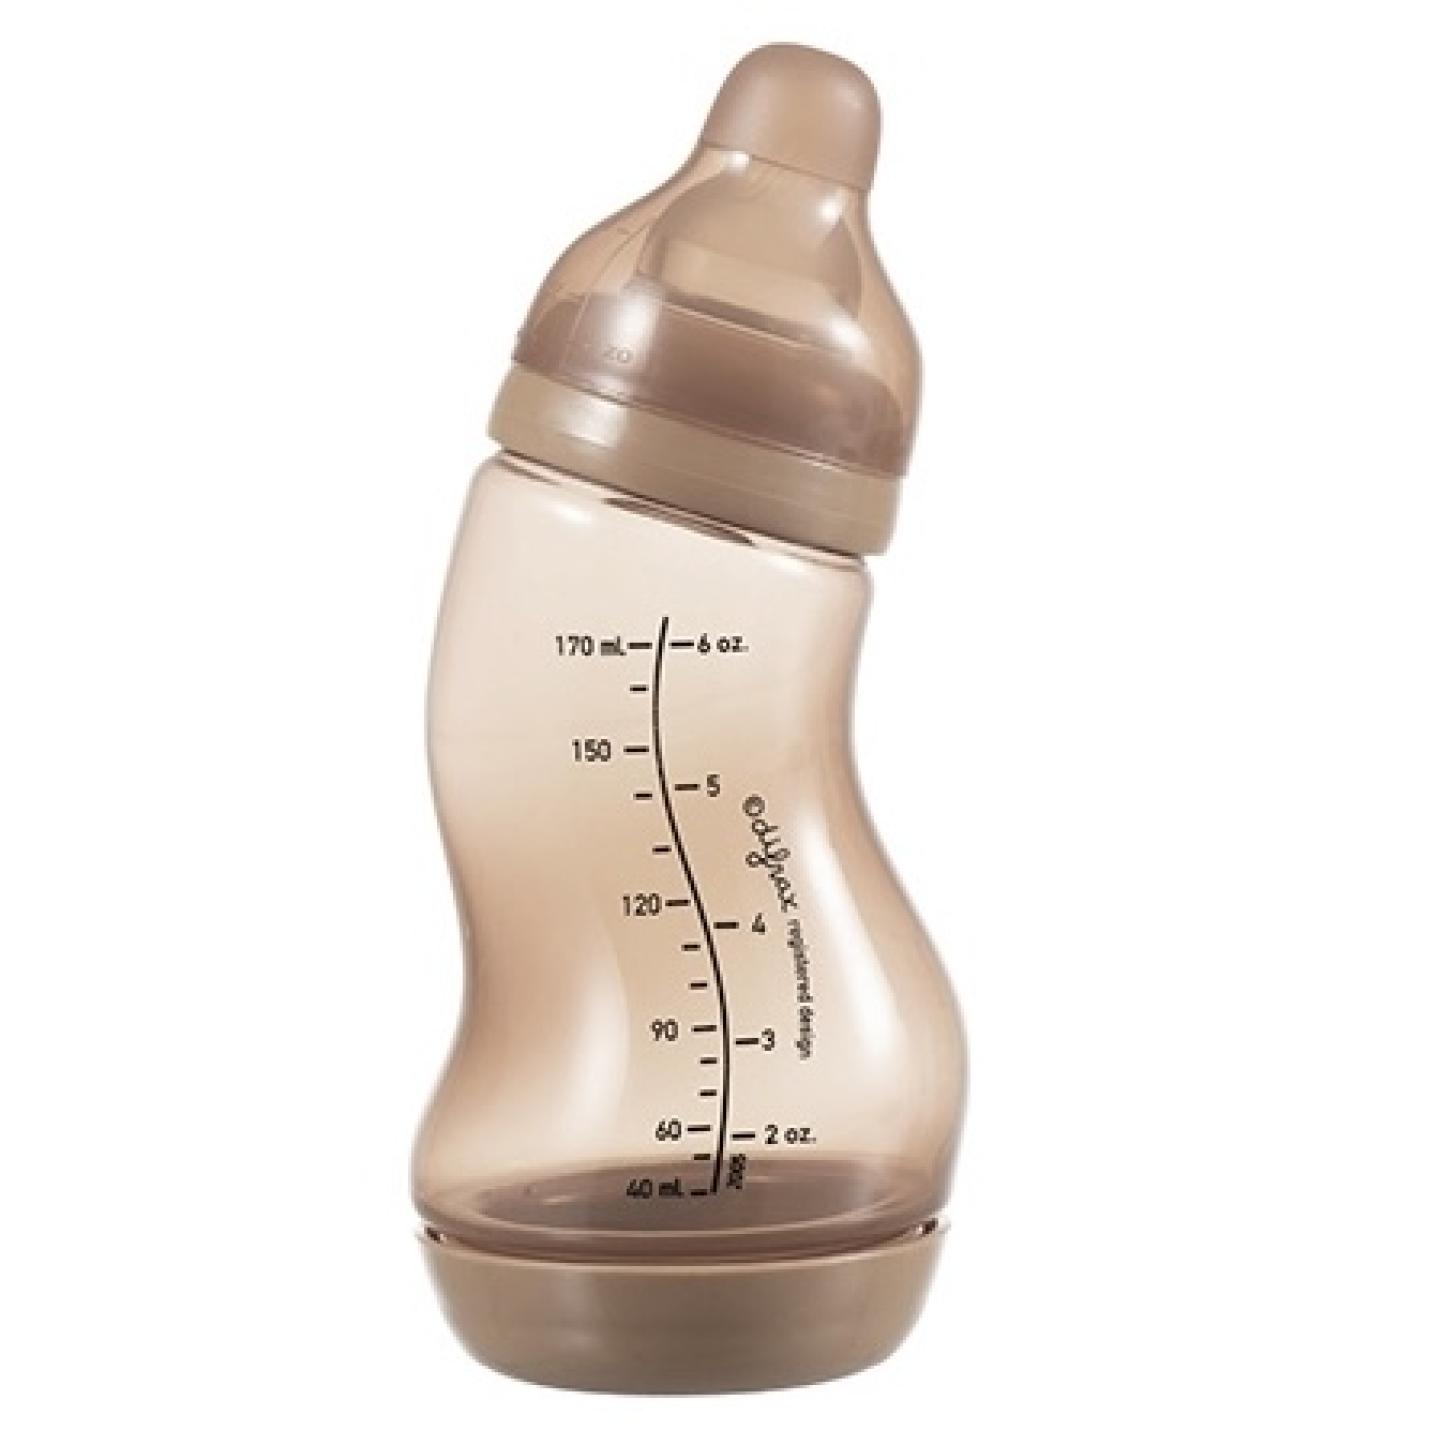 S-Fles Bruin baby fles bruin in s vorm met maatverdeling op fles en speen transparant erop schroefdop onderin